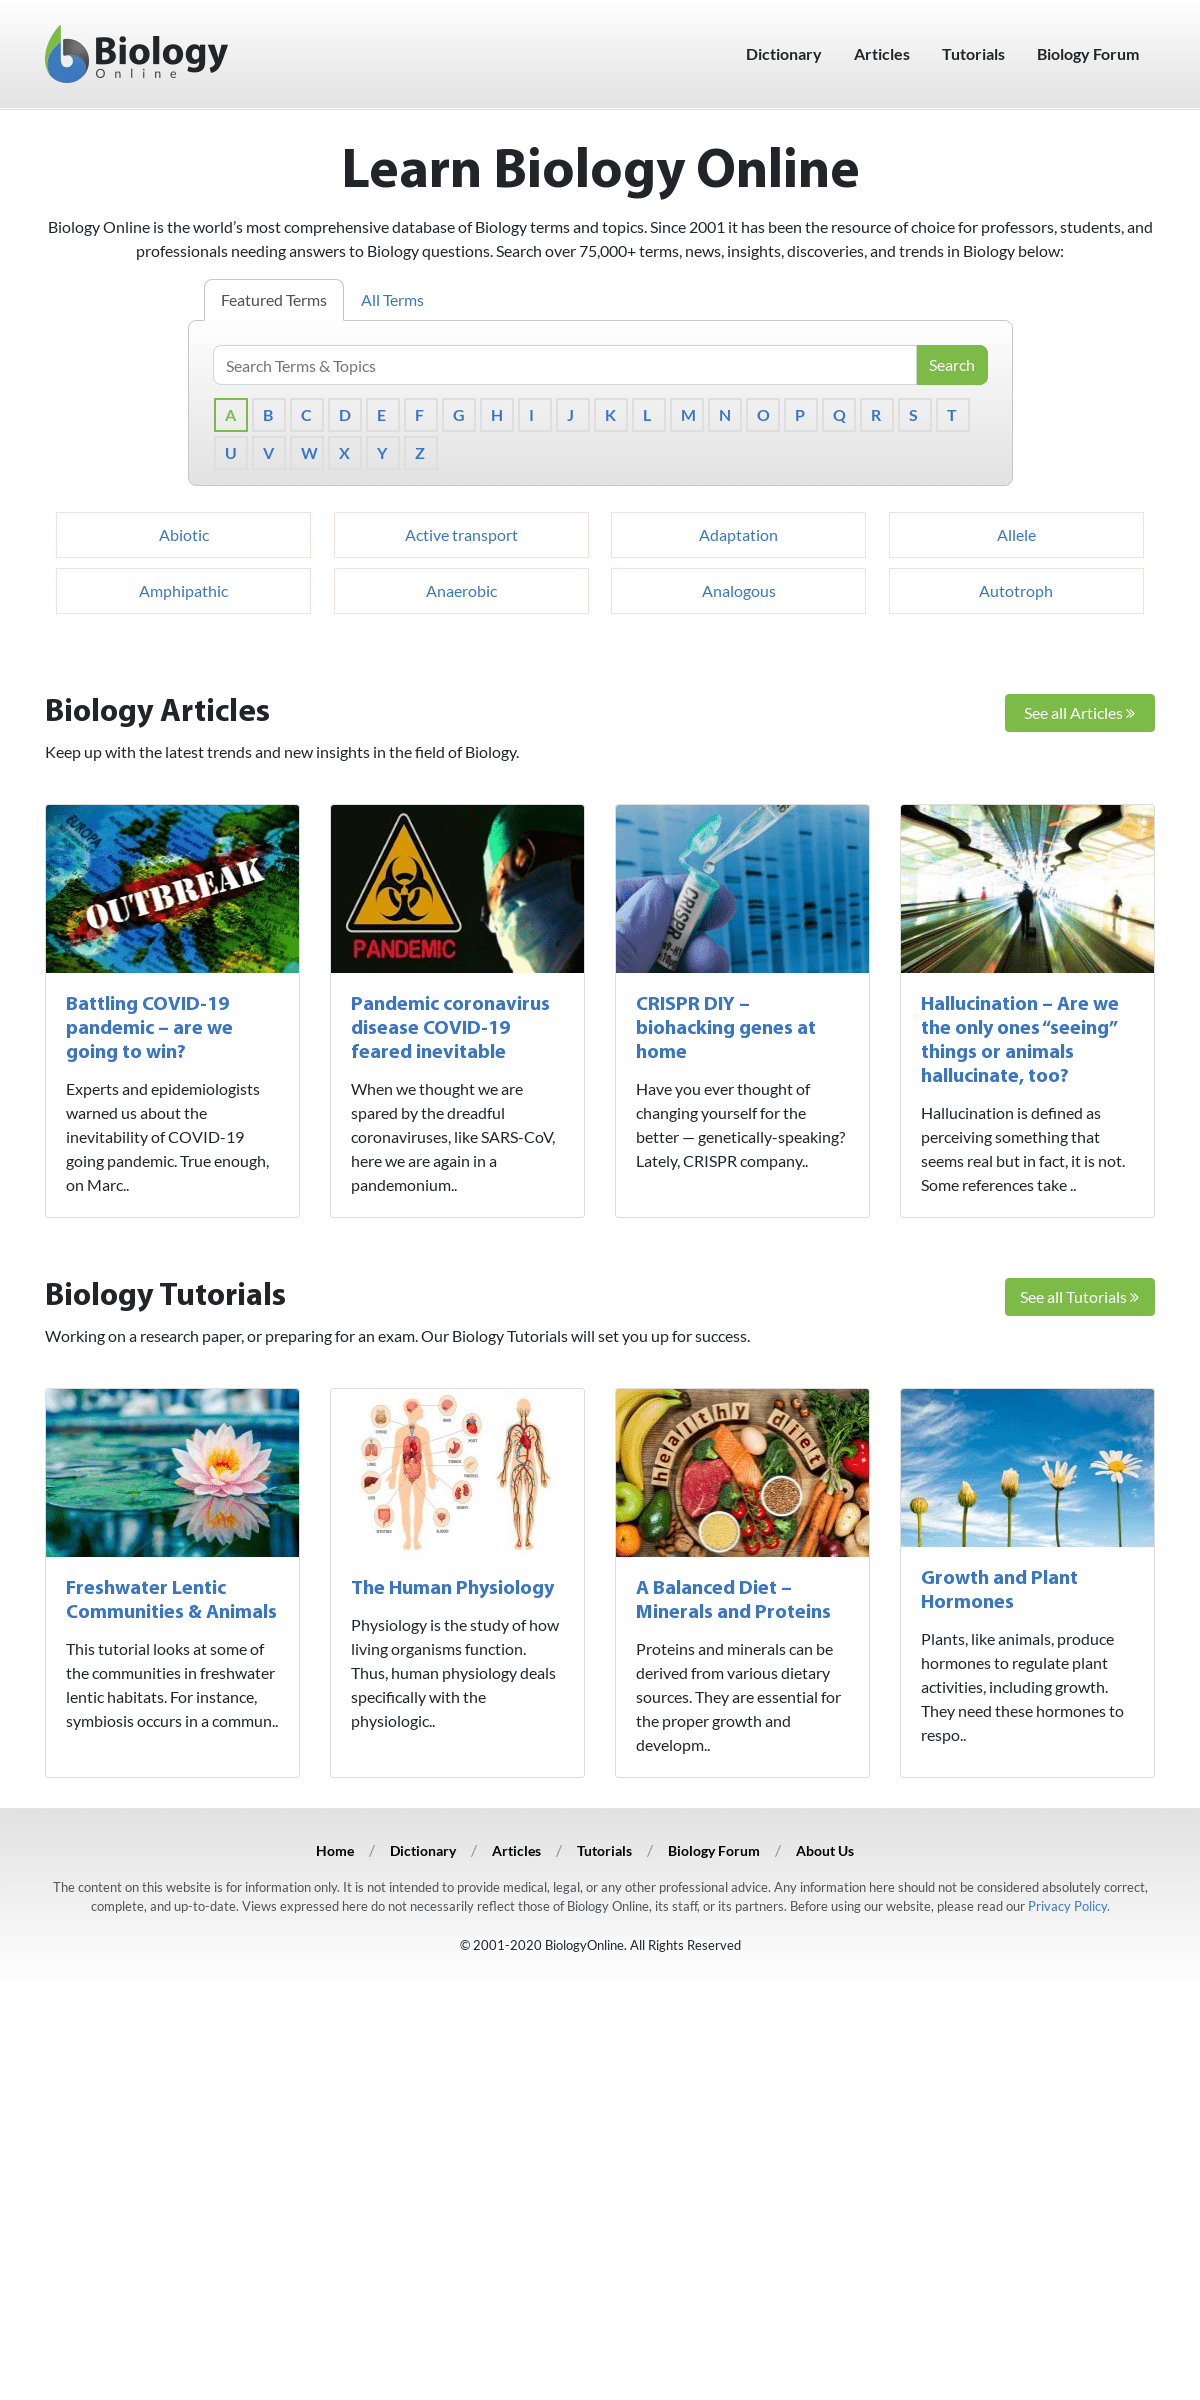 A complete backup of biologyonline.com